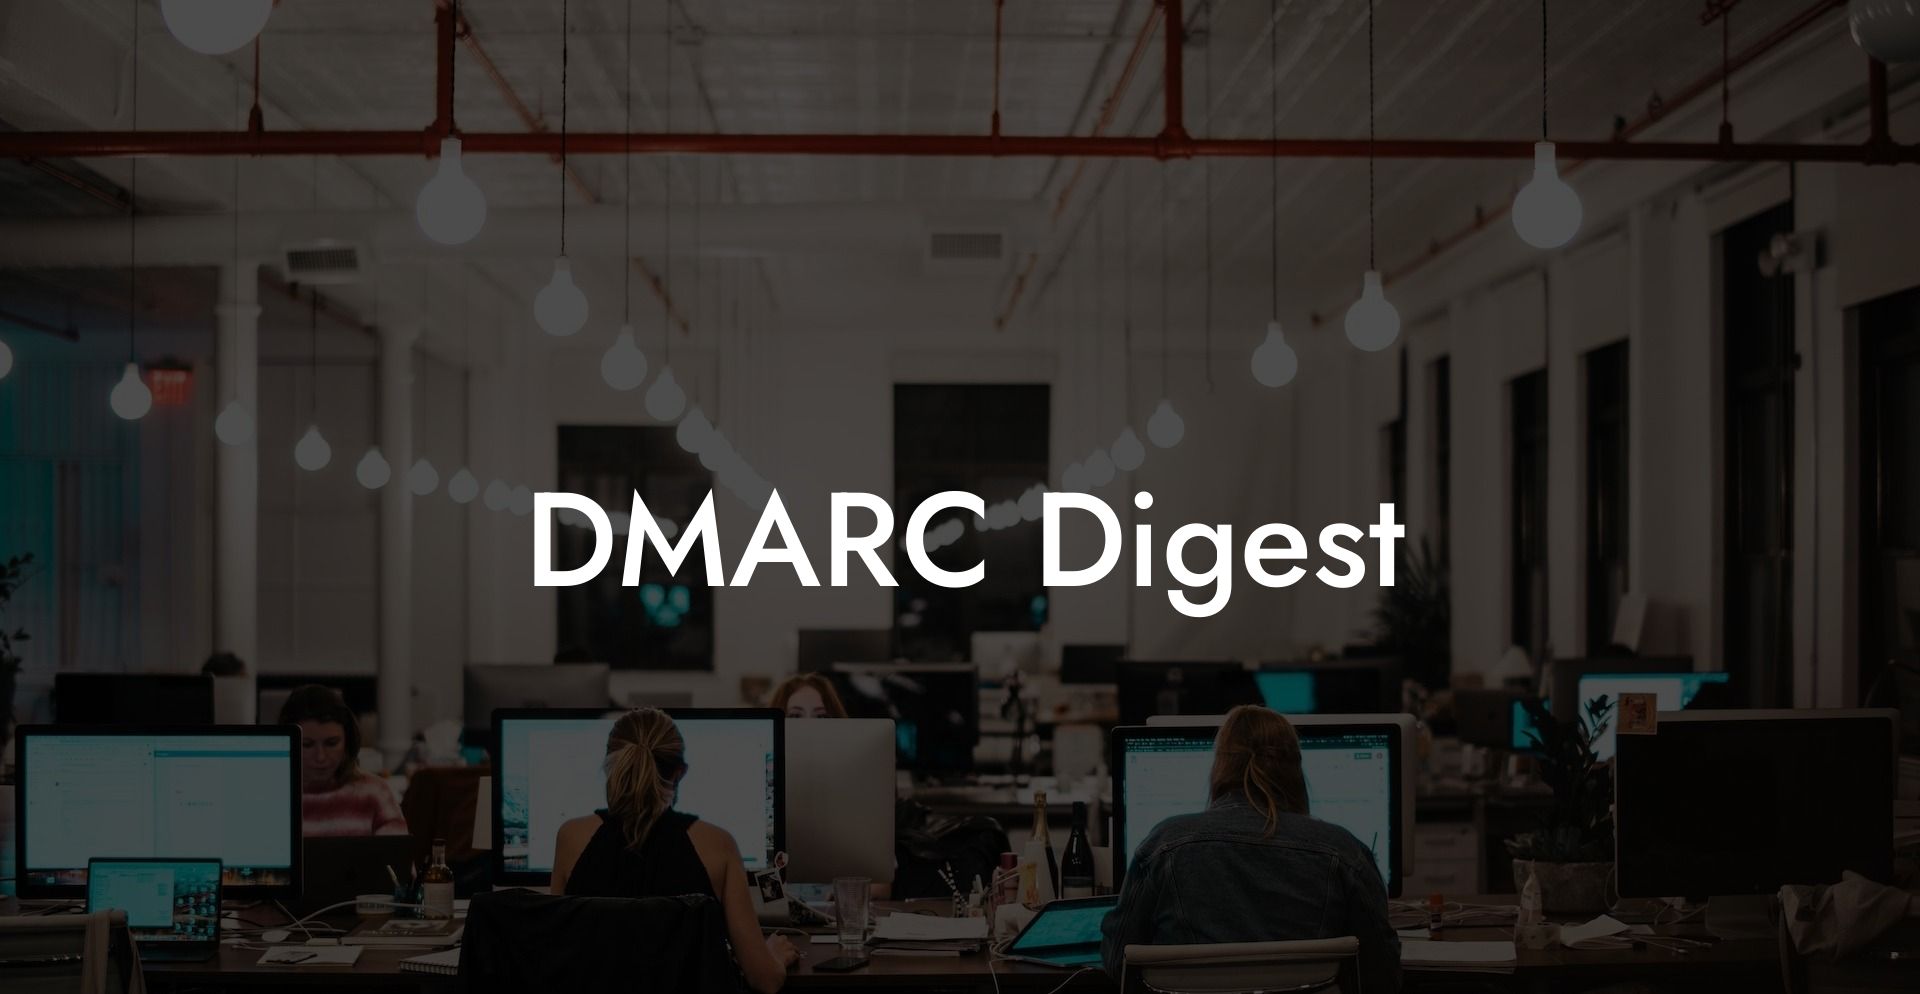 DMARC Digest